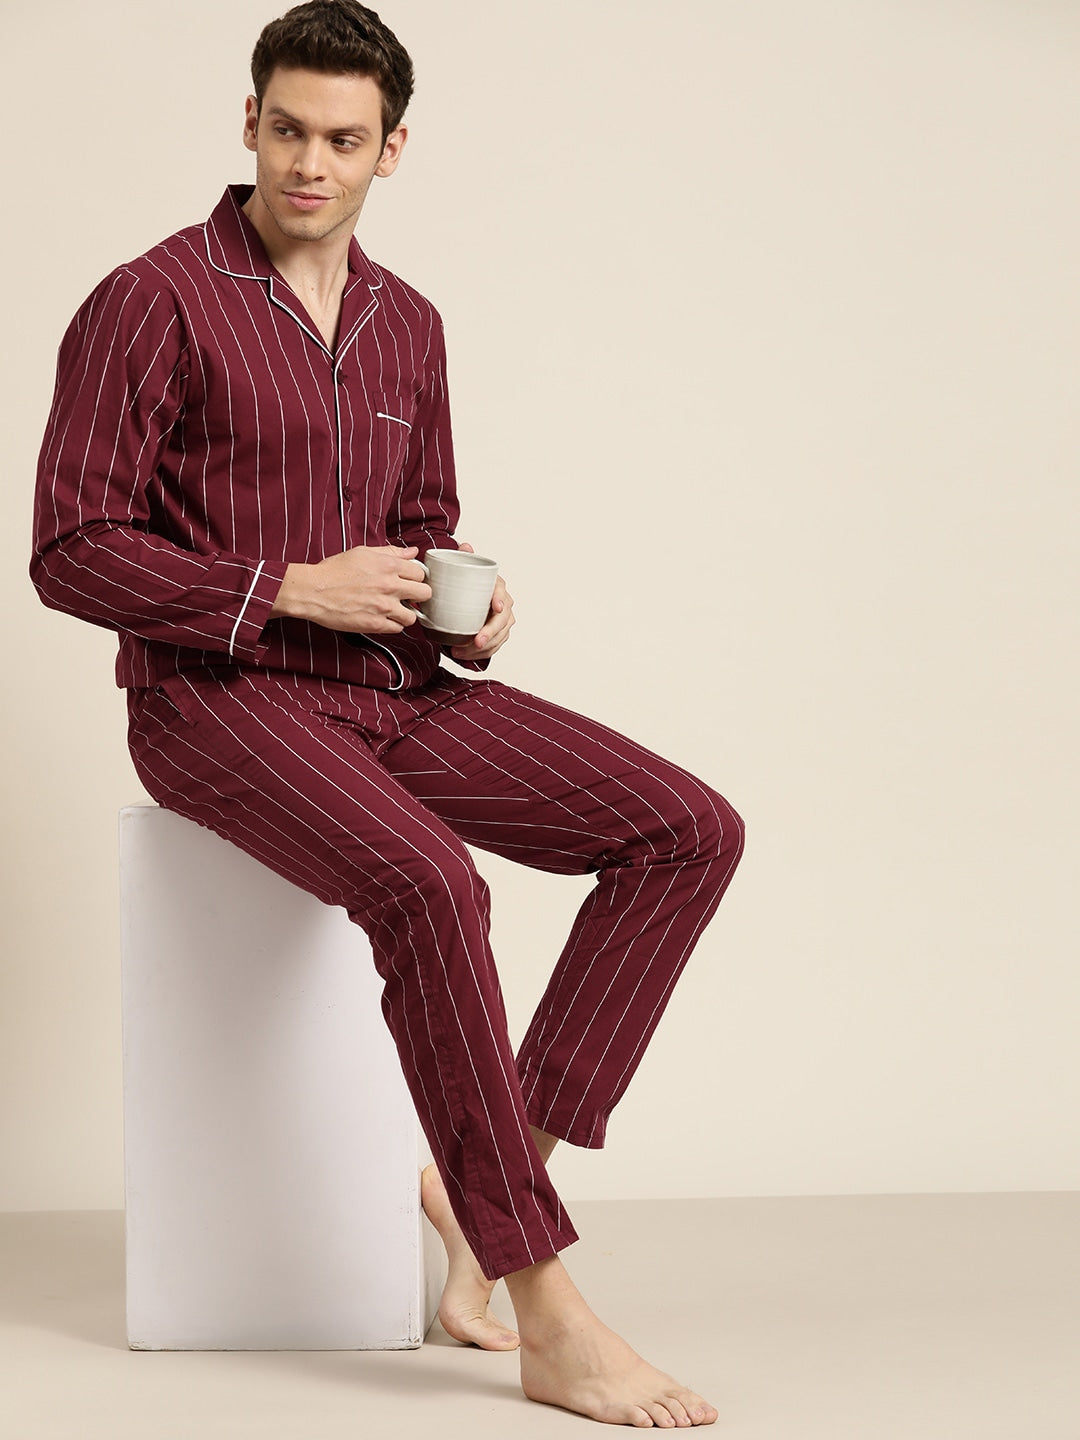 Adam Stbhun | Mens silk pajamas, Night dress for man, Satin clothing